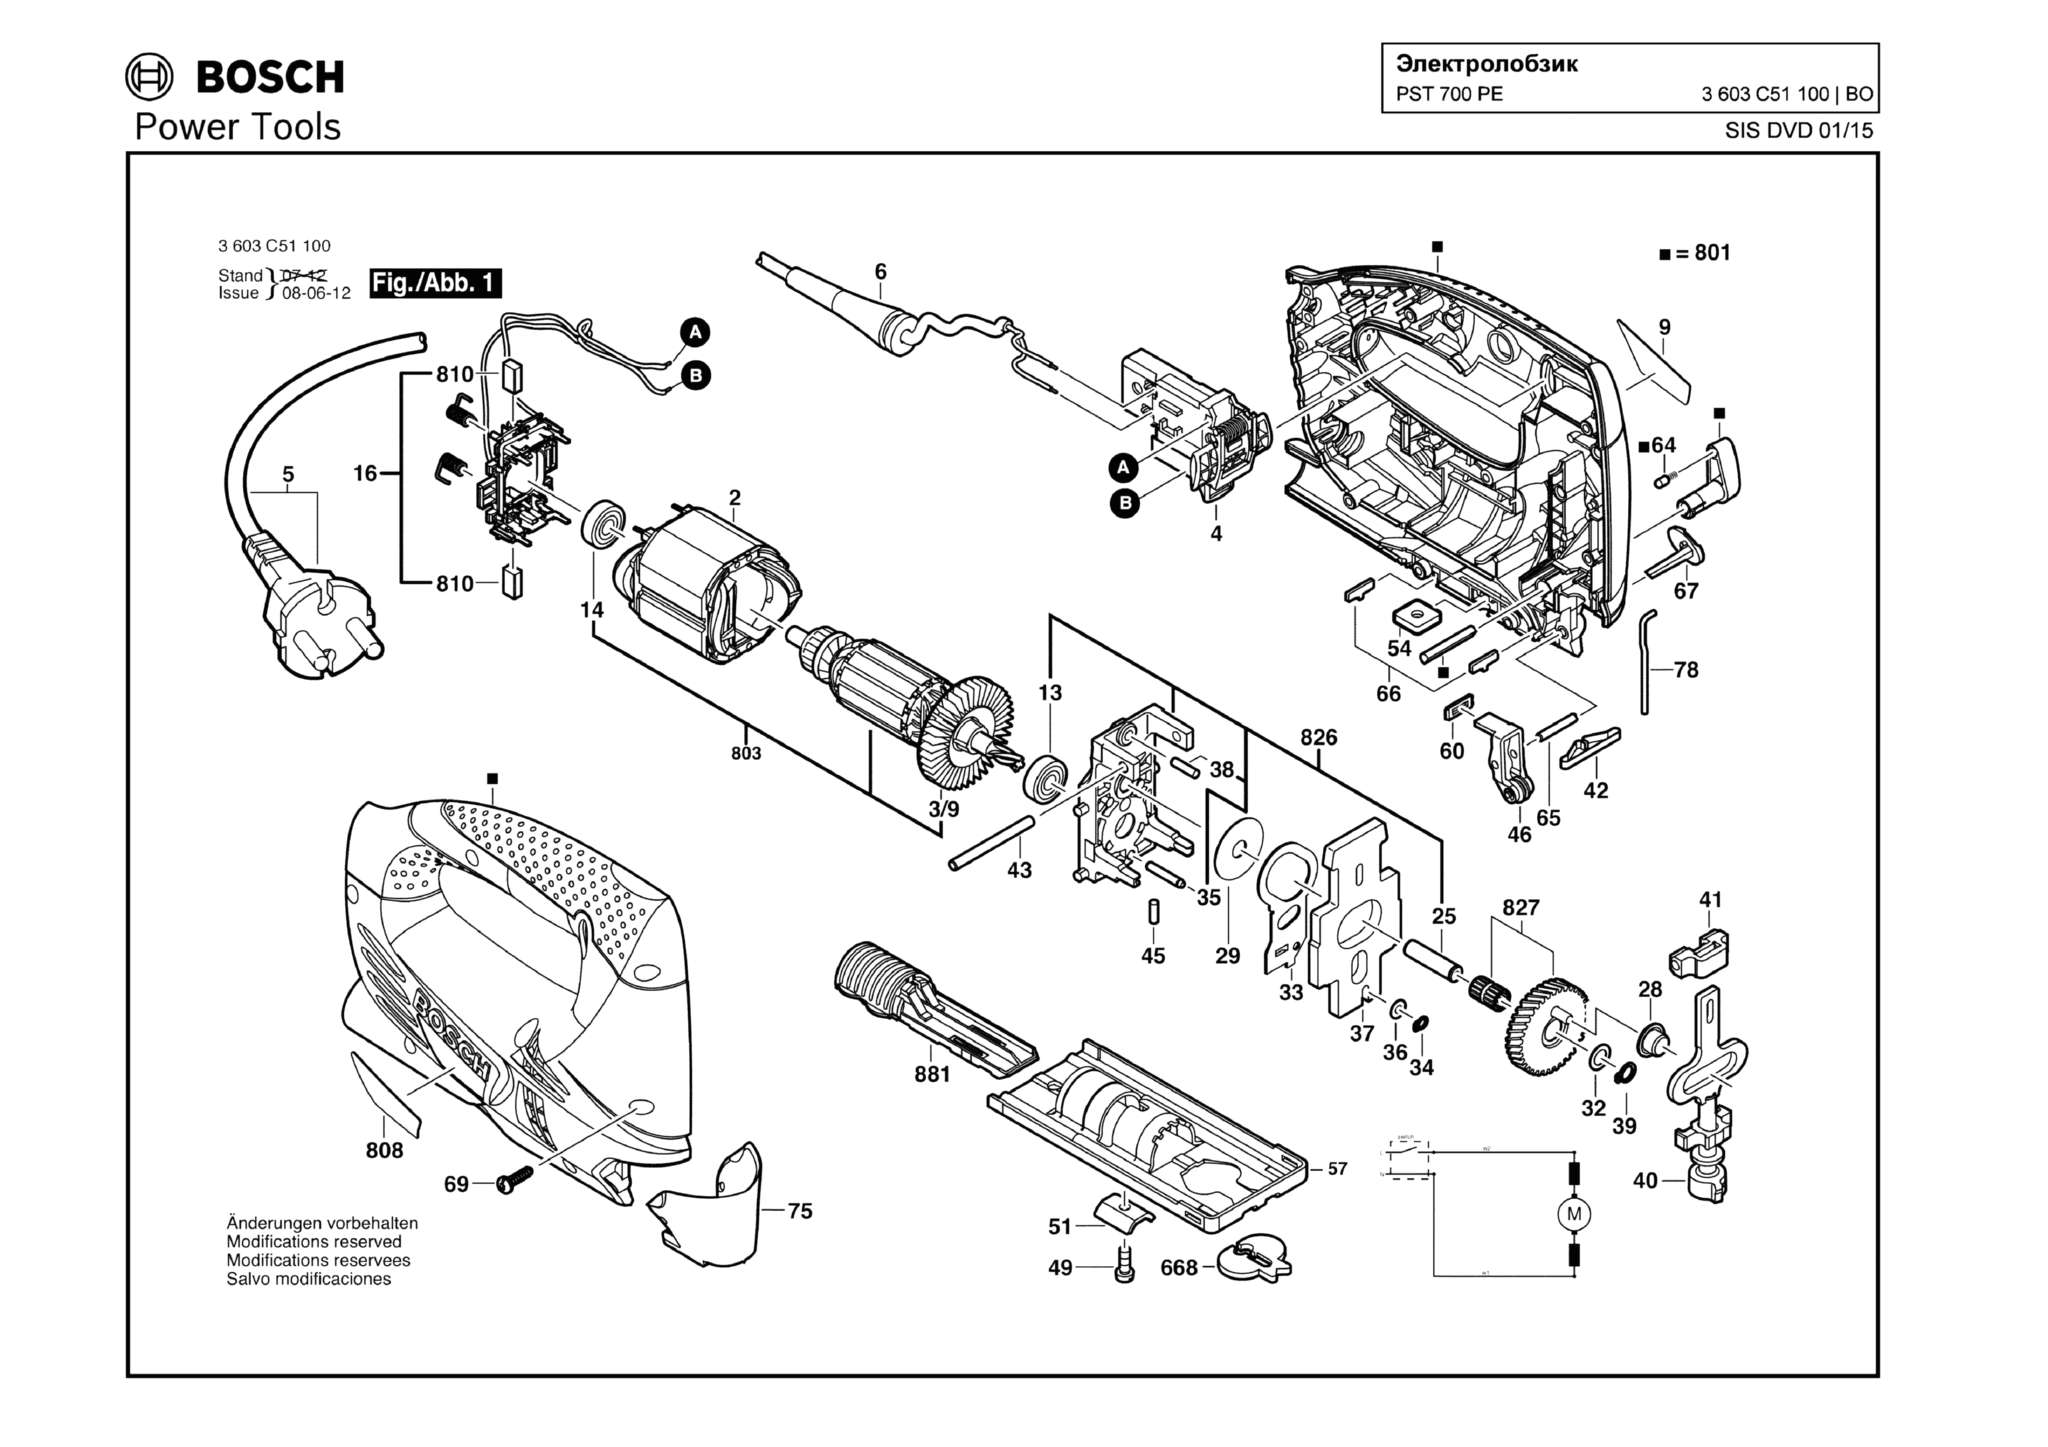 Запчасти, схема и деталировка Bosch PST 700 PE (ТИП 3603C51100)